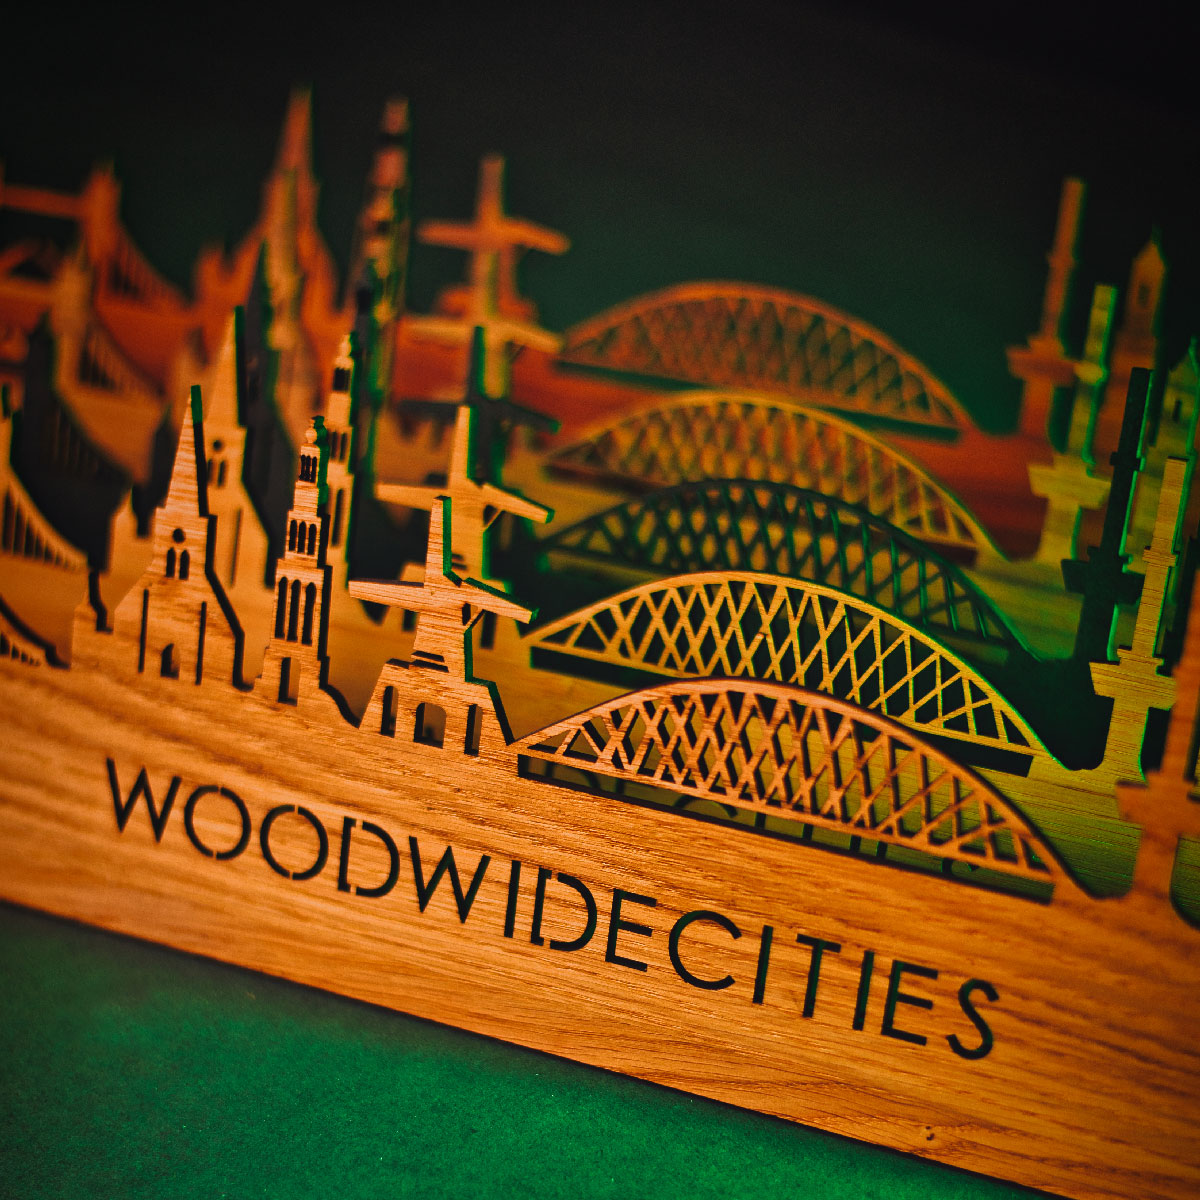 Skyline Klok Vianen Bamboe houten cadeau wanddecoratie relatiegeschenk van WoodWideCities